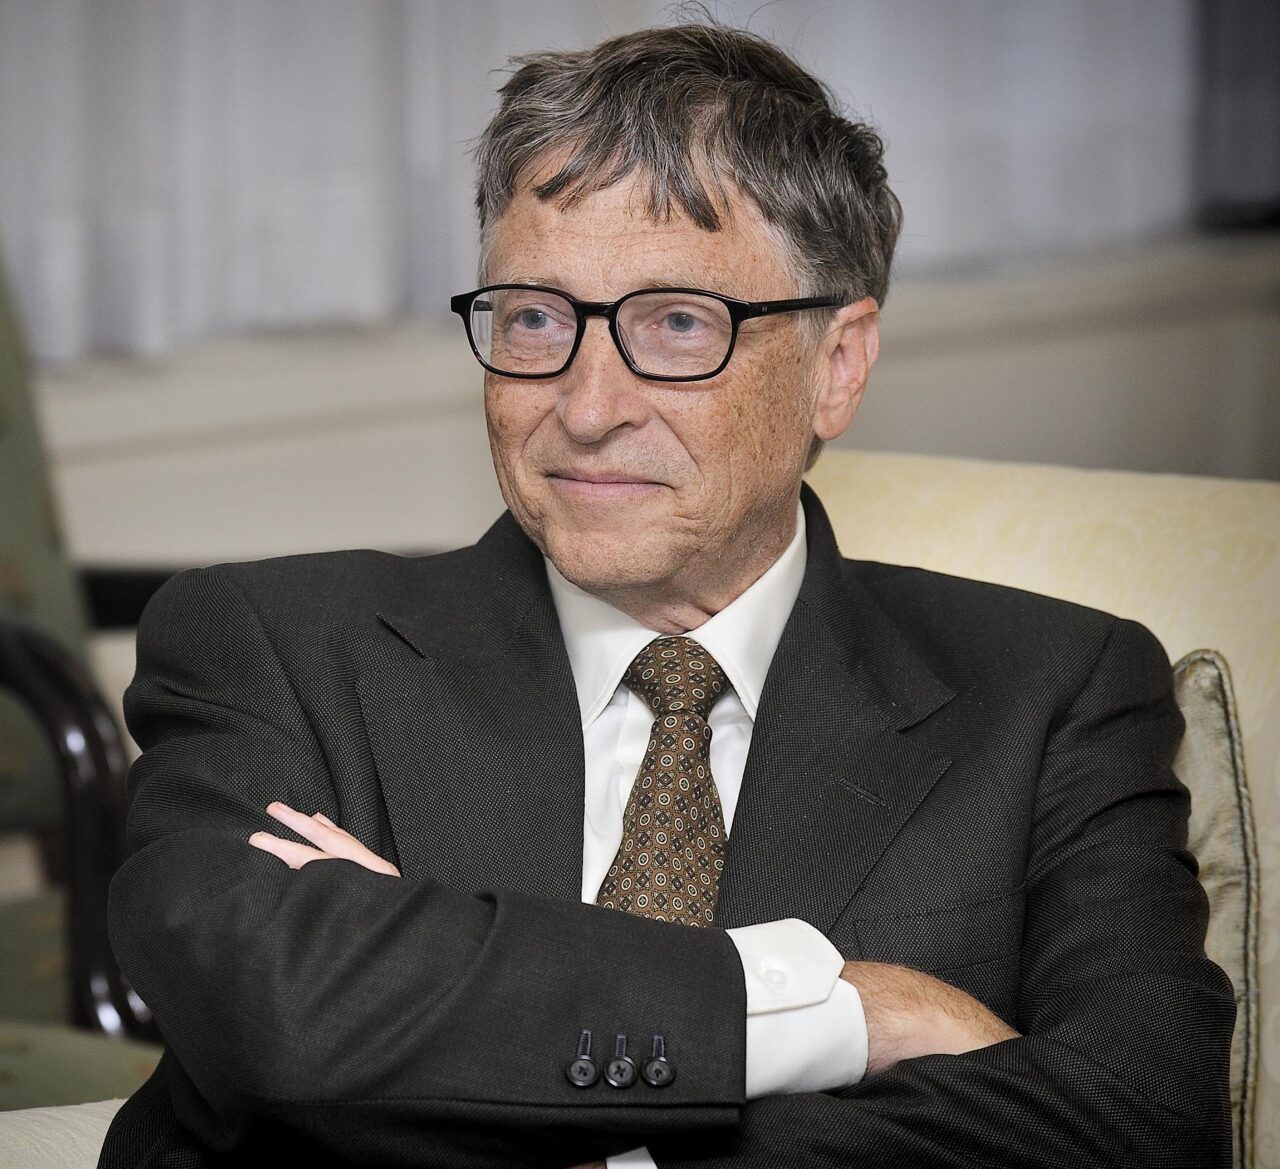 Bill Gates w średnim wieku z okularami, w eleganckim garniturze, siedzi z założonymi rękami i lekko się uśmiecha.